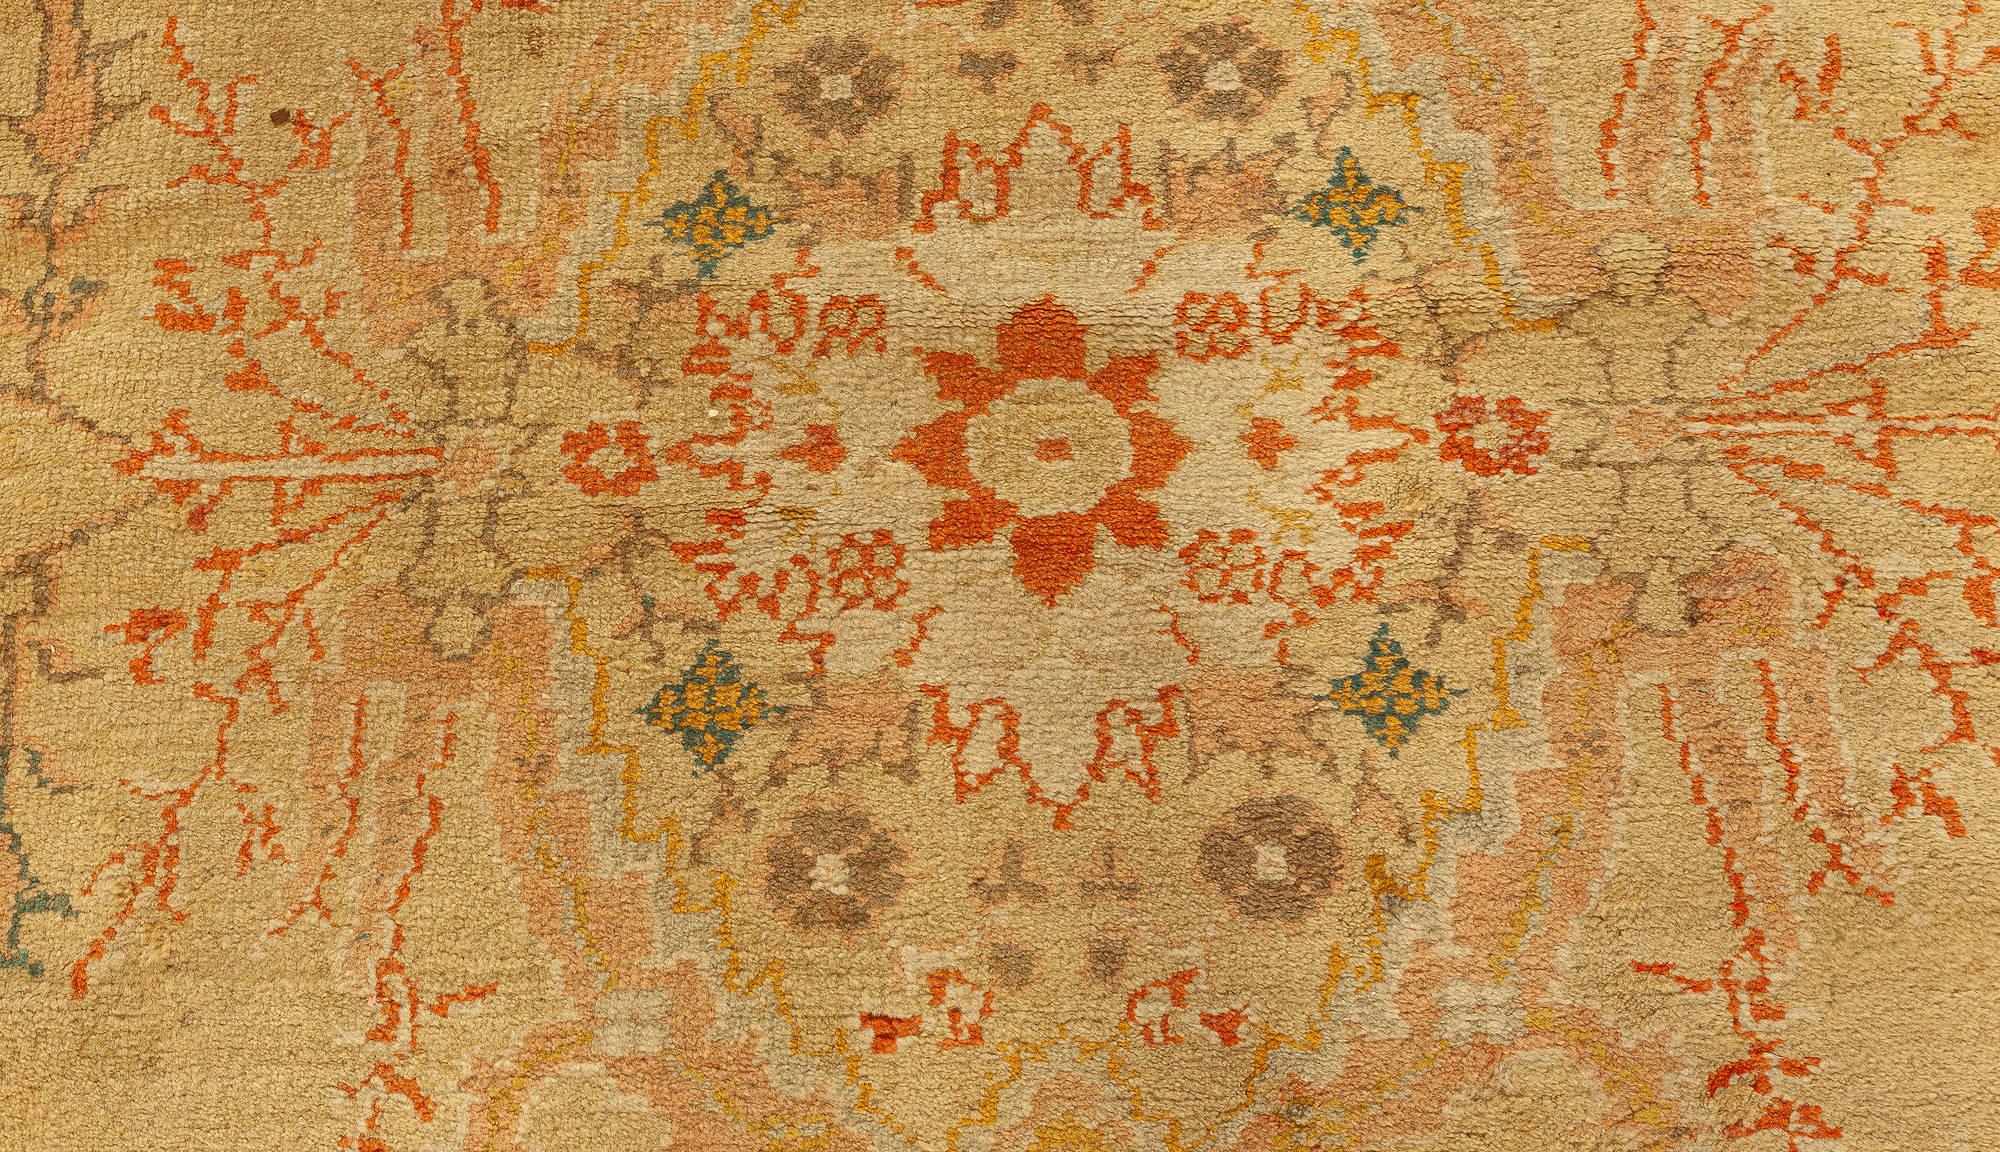 Antiker türkischer botanischer Oushak-Teppich in Beige
Größe: 11'5